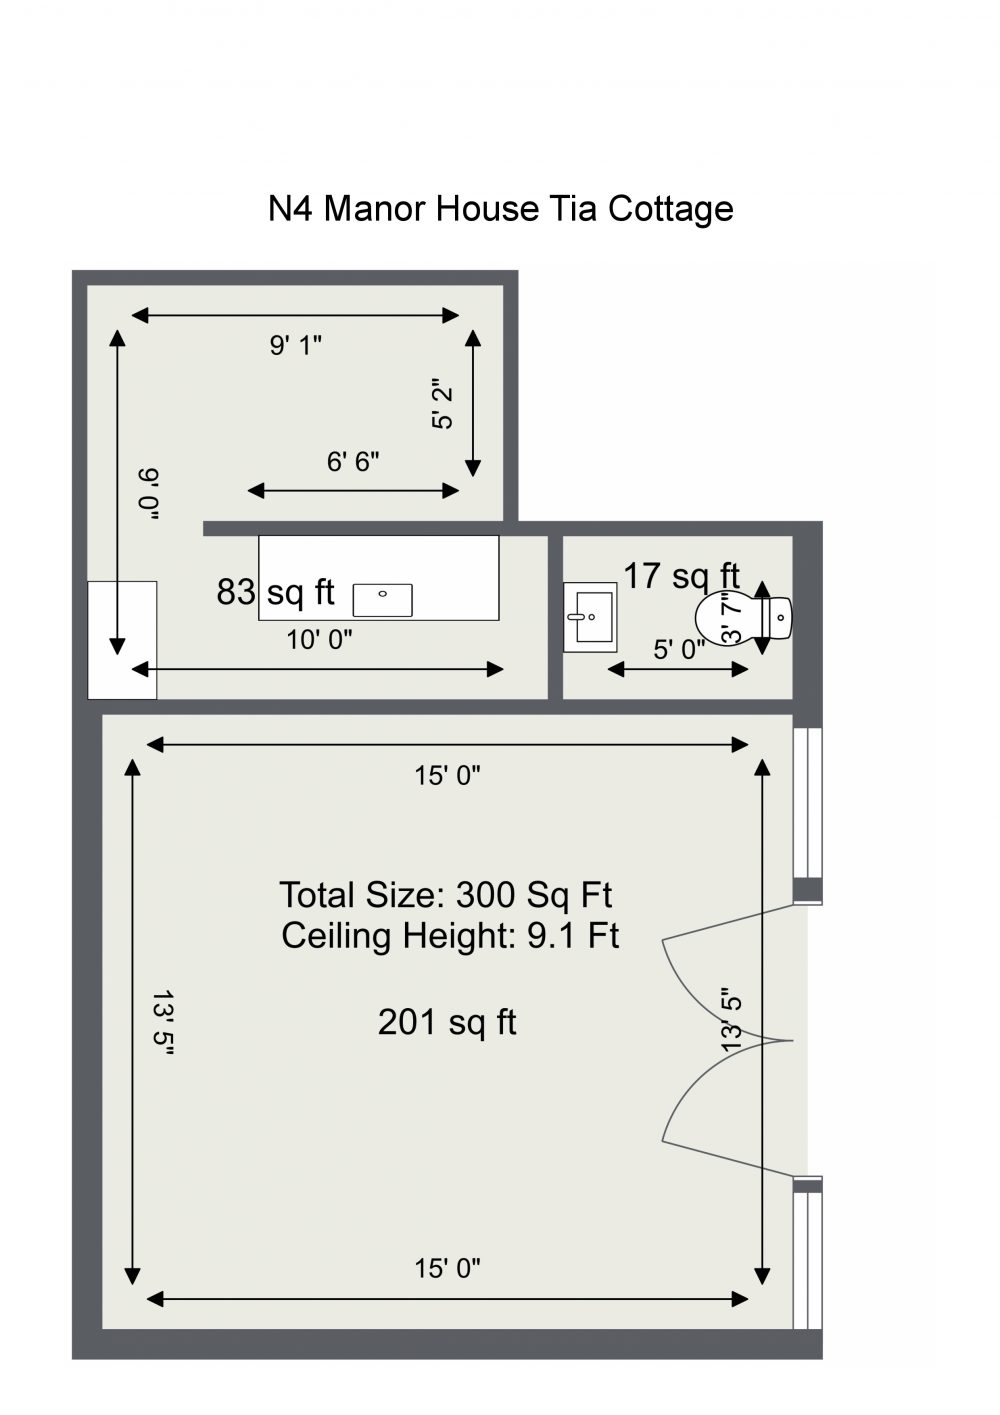 N4 Manor House Tia Cottage – N4 Manor House Tia Cottage – Floor Plan